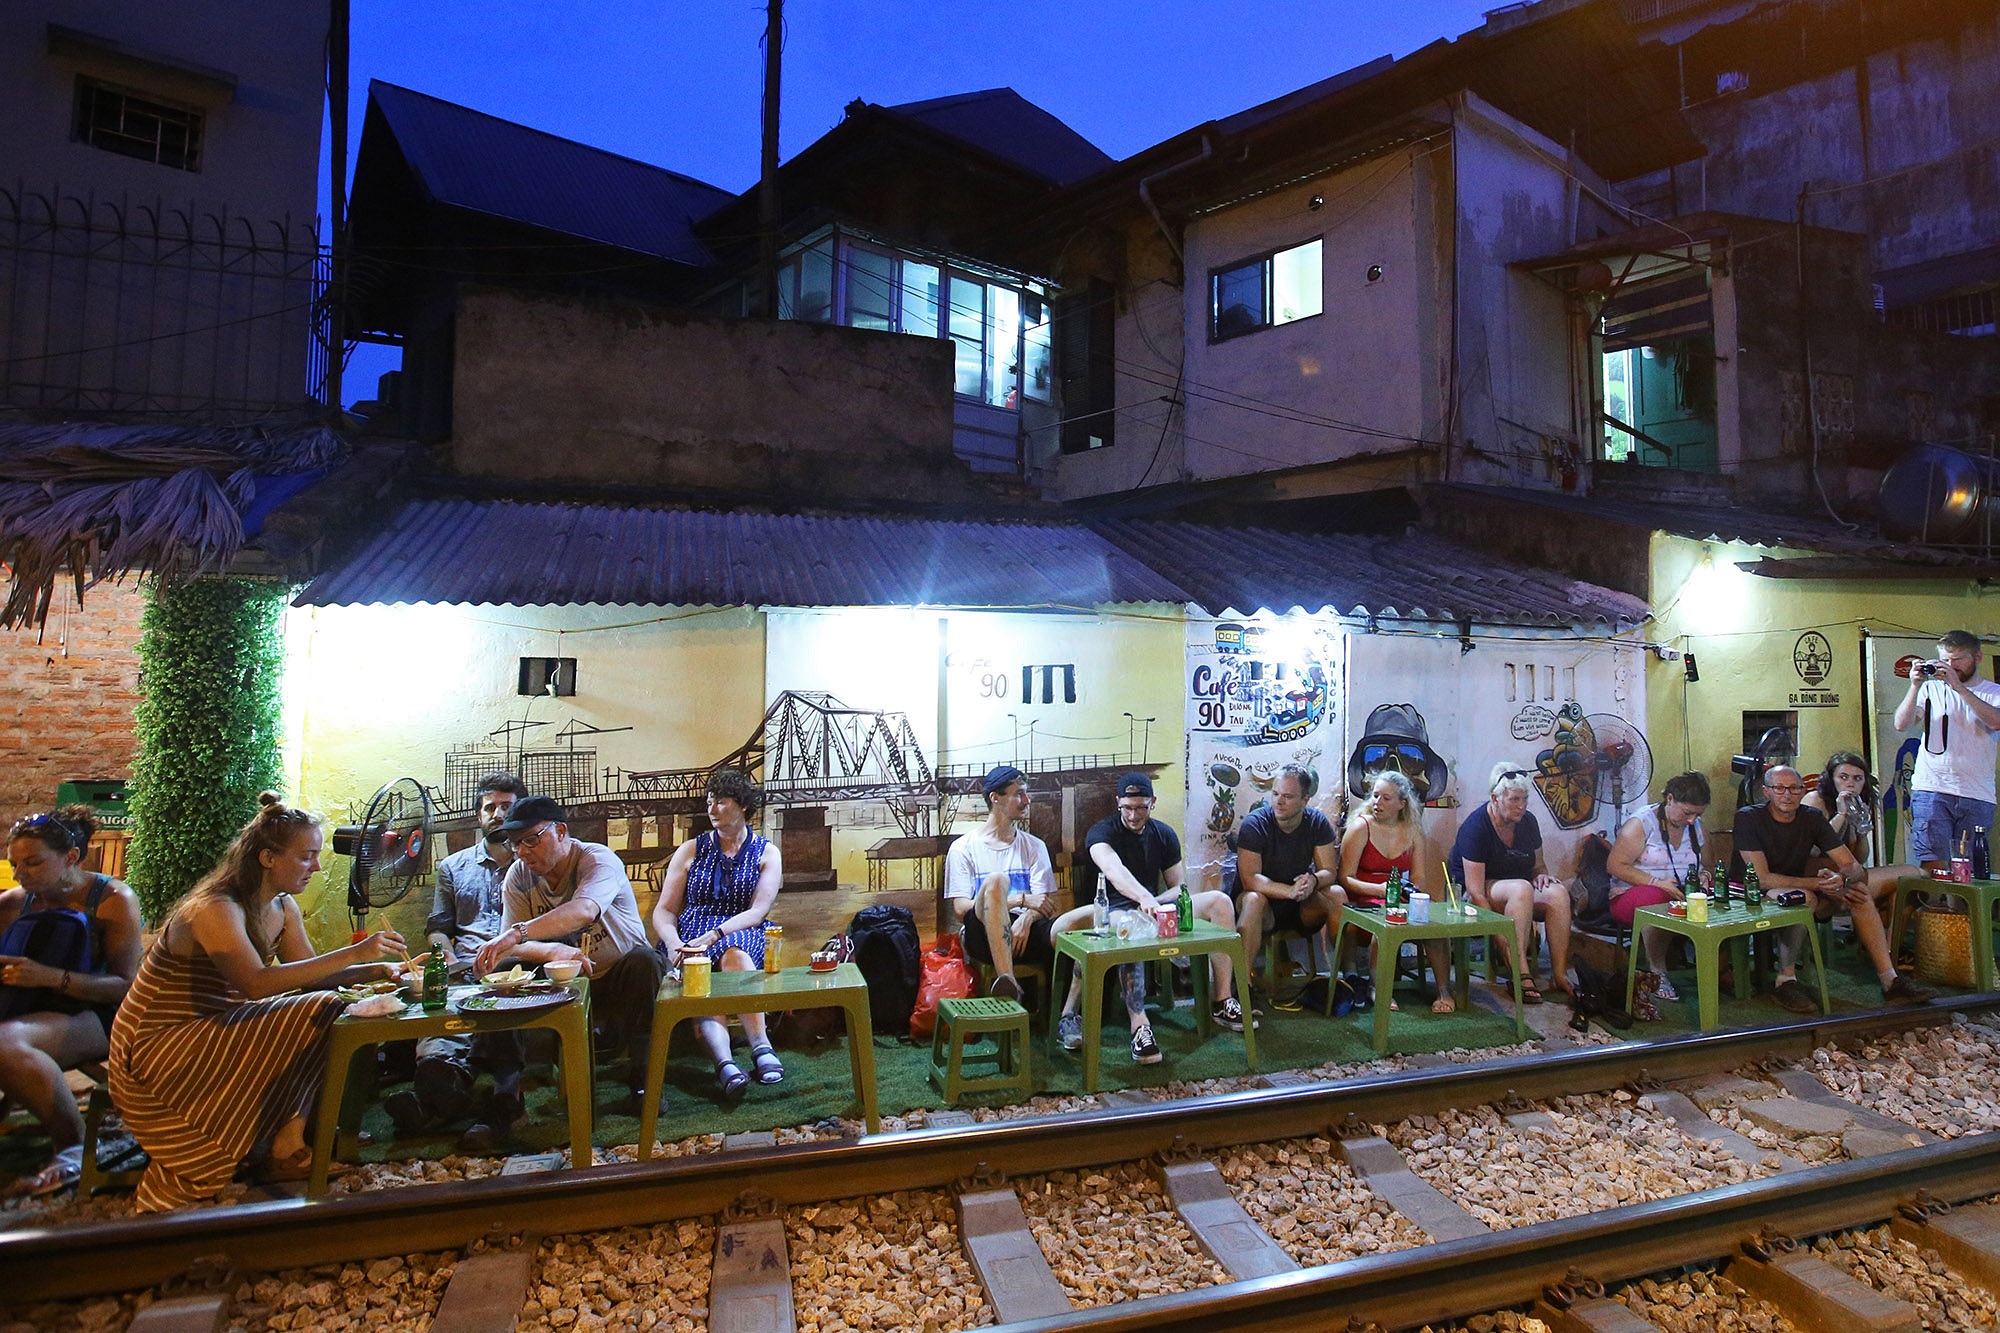 Xóm đường tàu lên đời thành điểm du lịch hấp dẫn ở Hà Nội - 12